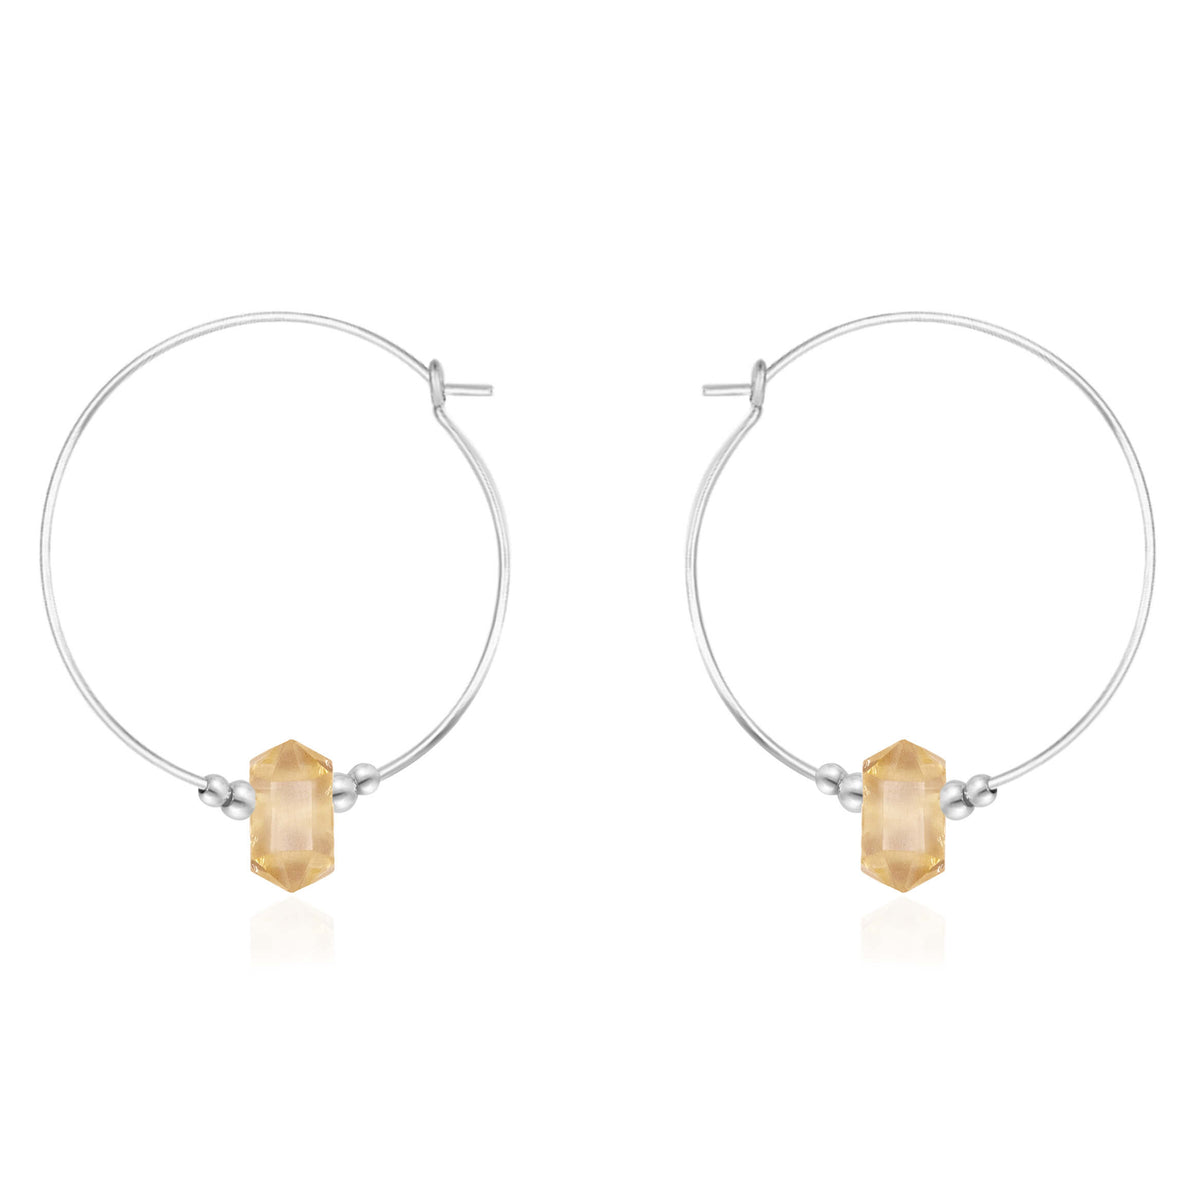 Large Double Terminated Crystal Hoop Earrings - Citrine - Sterling Silver - Luna Tide Handmade Jewellery